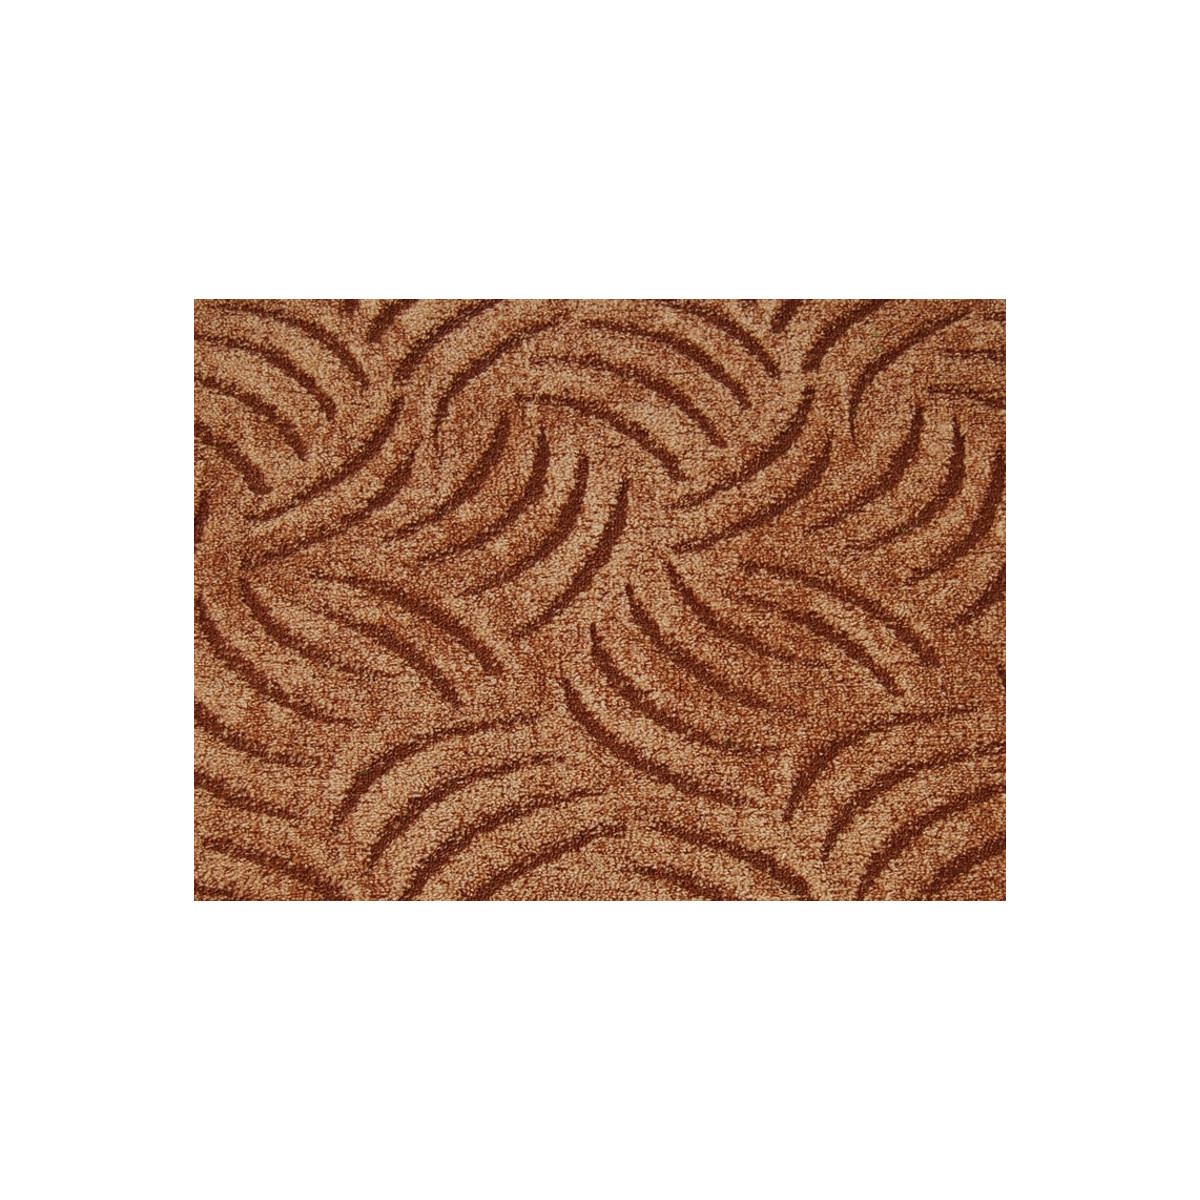 Metrážový koberec Tango 822 Hnědý